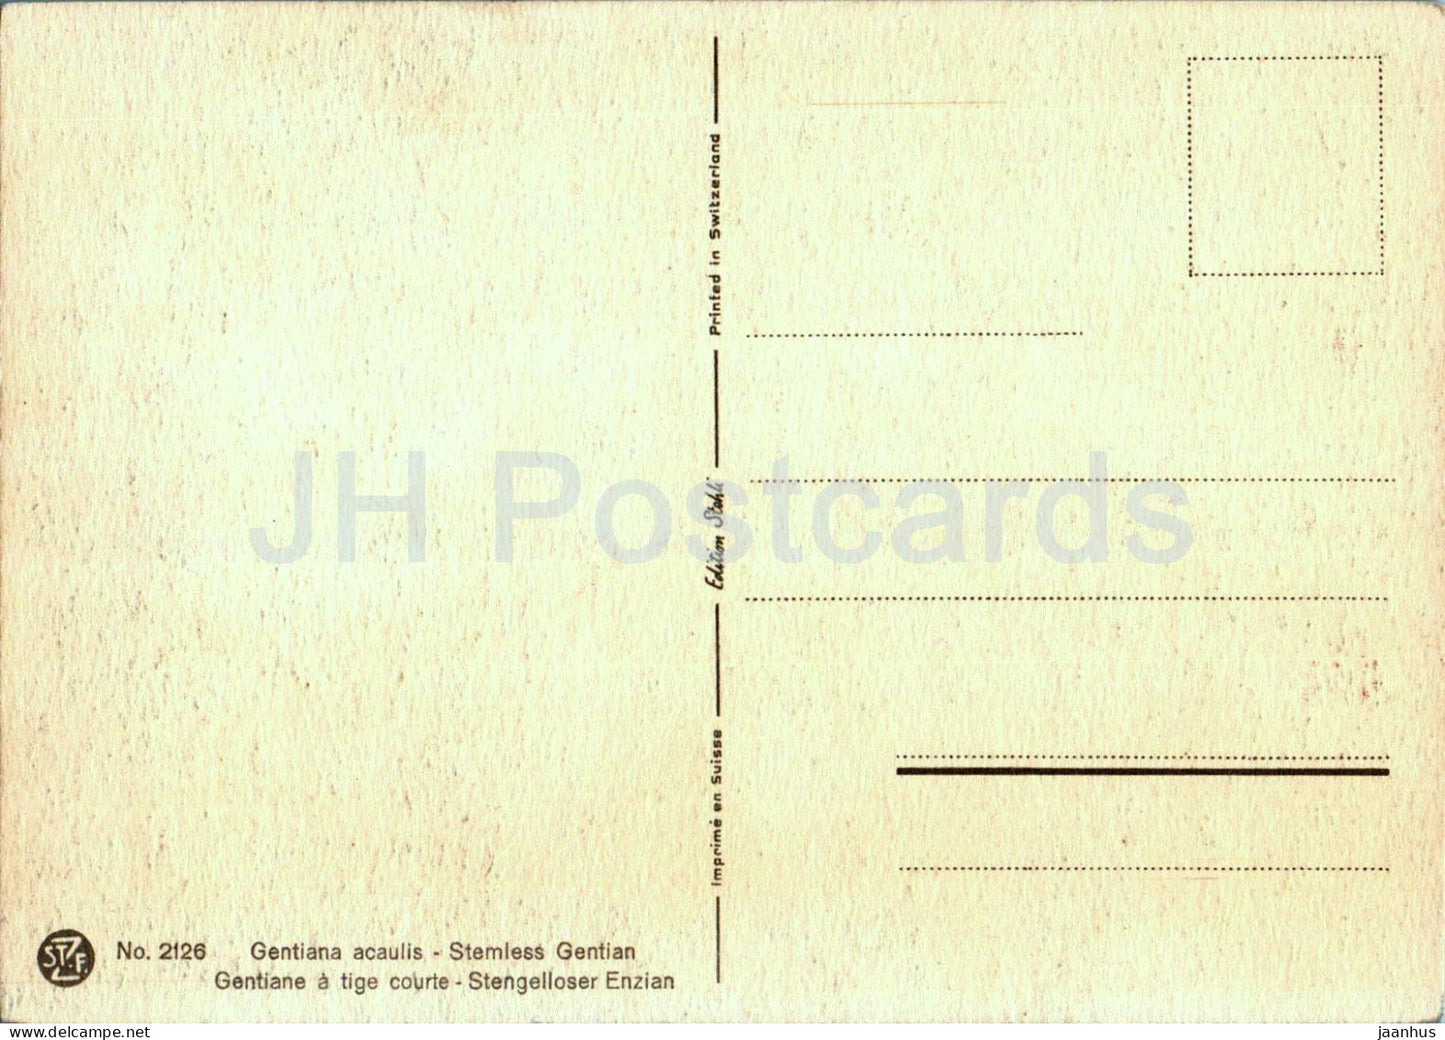 Gentiana acaulis - Stammloser Enzian - Stengelloser Enzian - 2126 - alte Postkarte - Blumen - Schweiz - unbenutzt